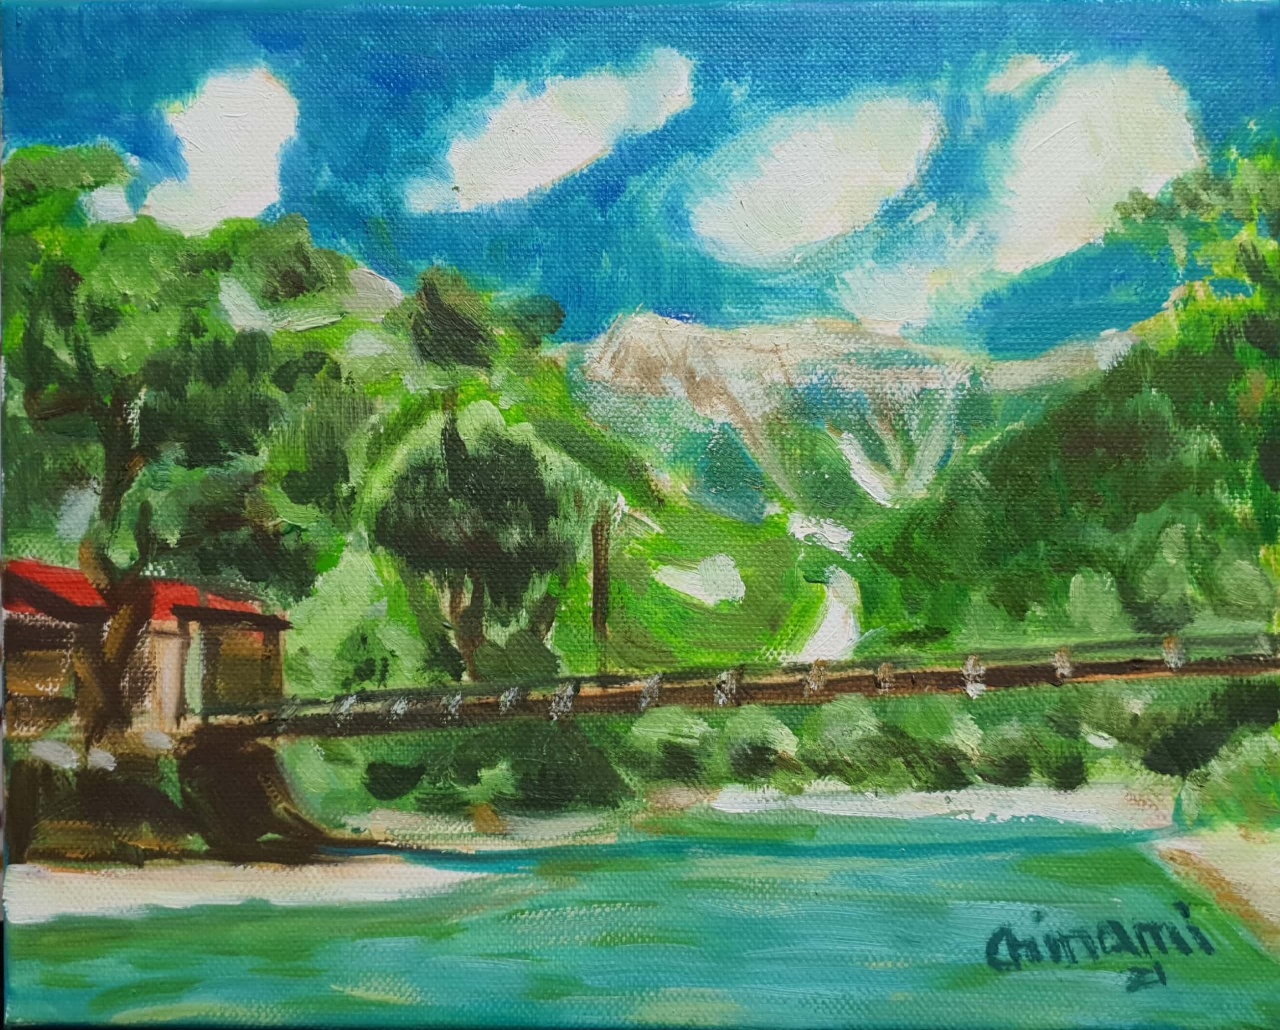 【国産在庫】絵画 油絵 油彩 風景画 台風後の上高地河童橋 F6 WG211 今年最初の入荷作品です。お部屋のイメージを変えてみませんか 自然、風景画